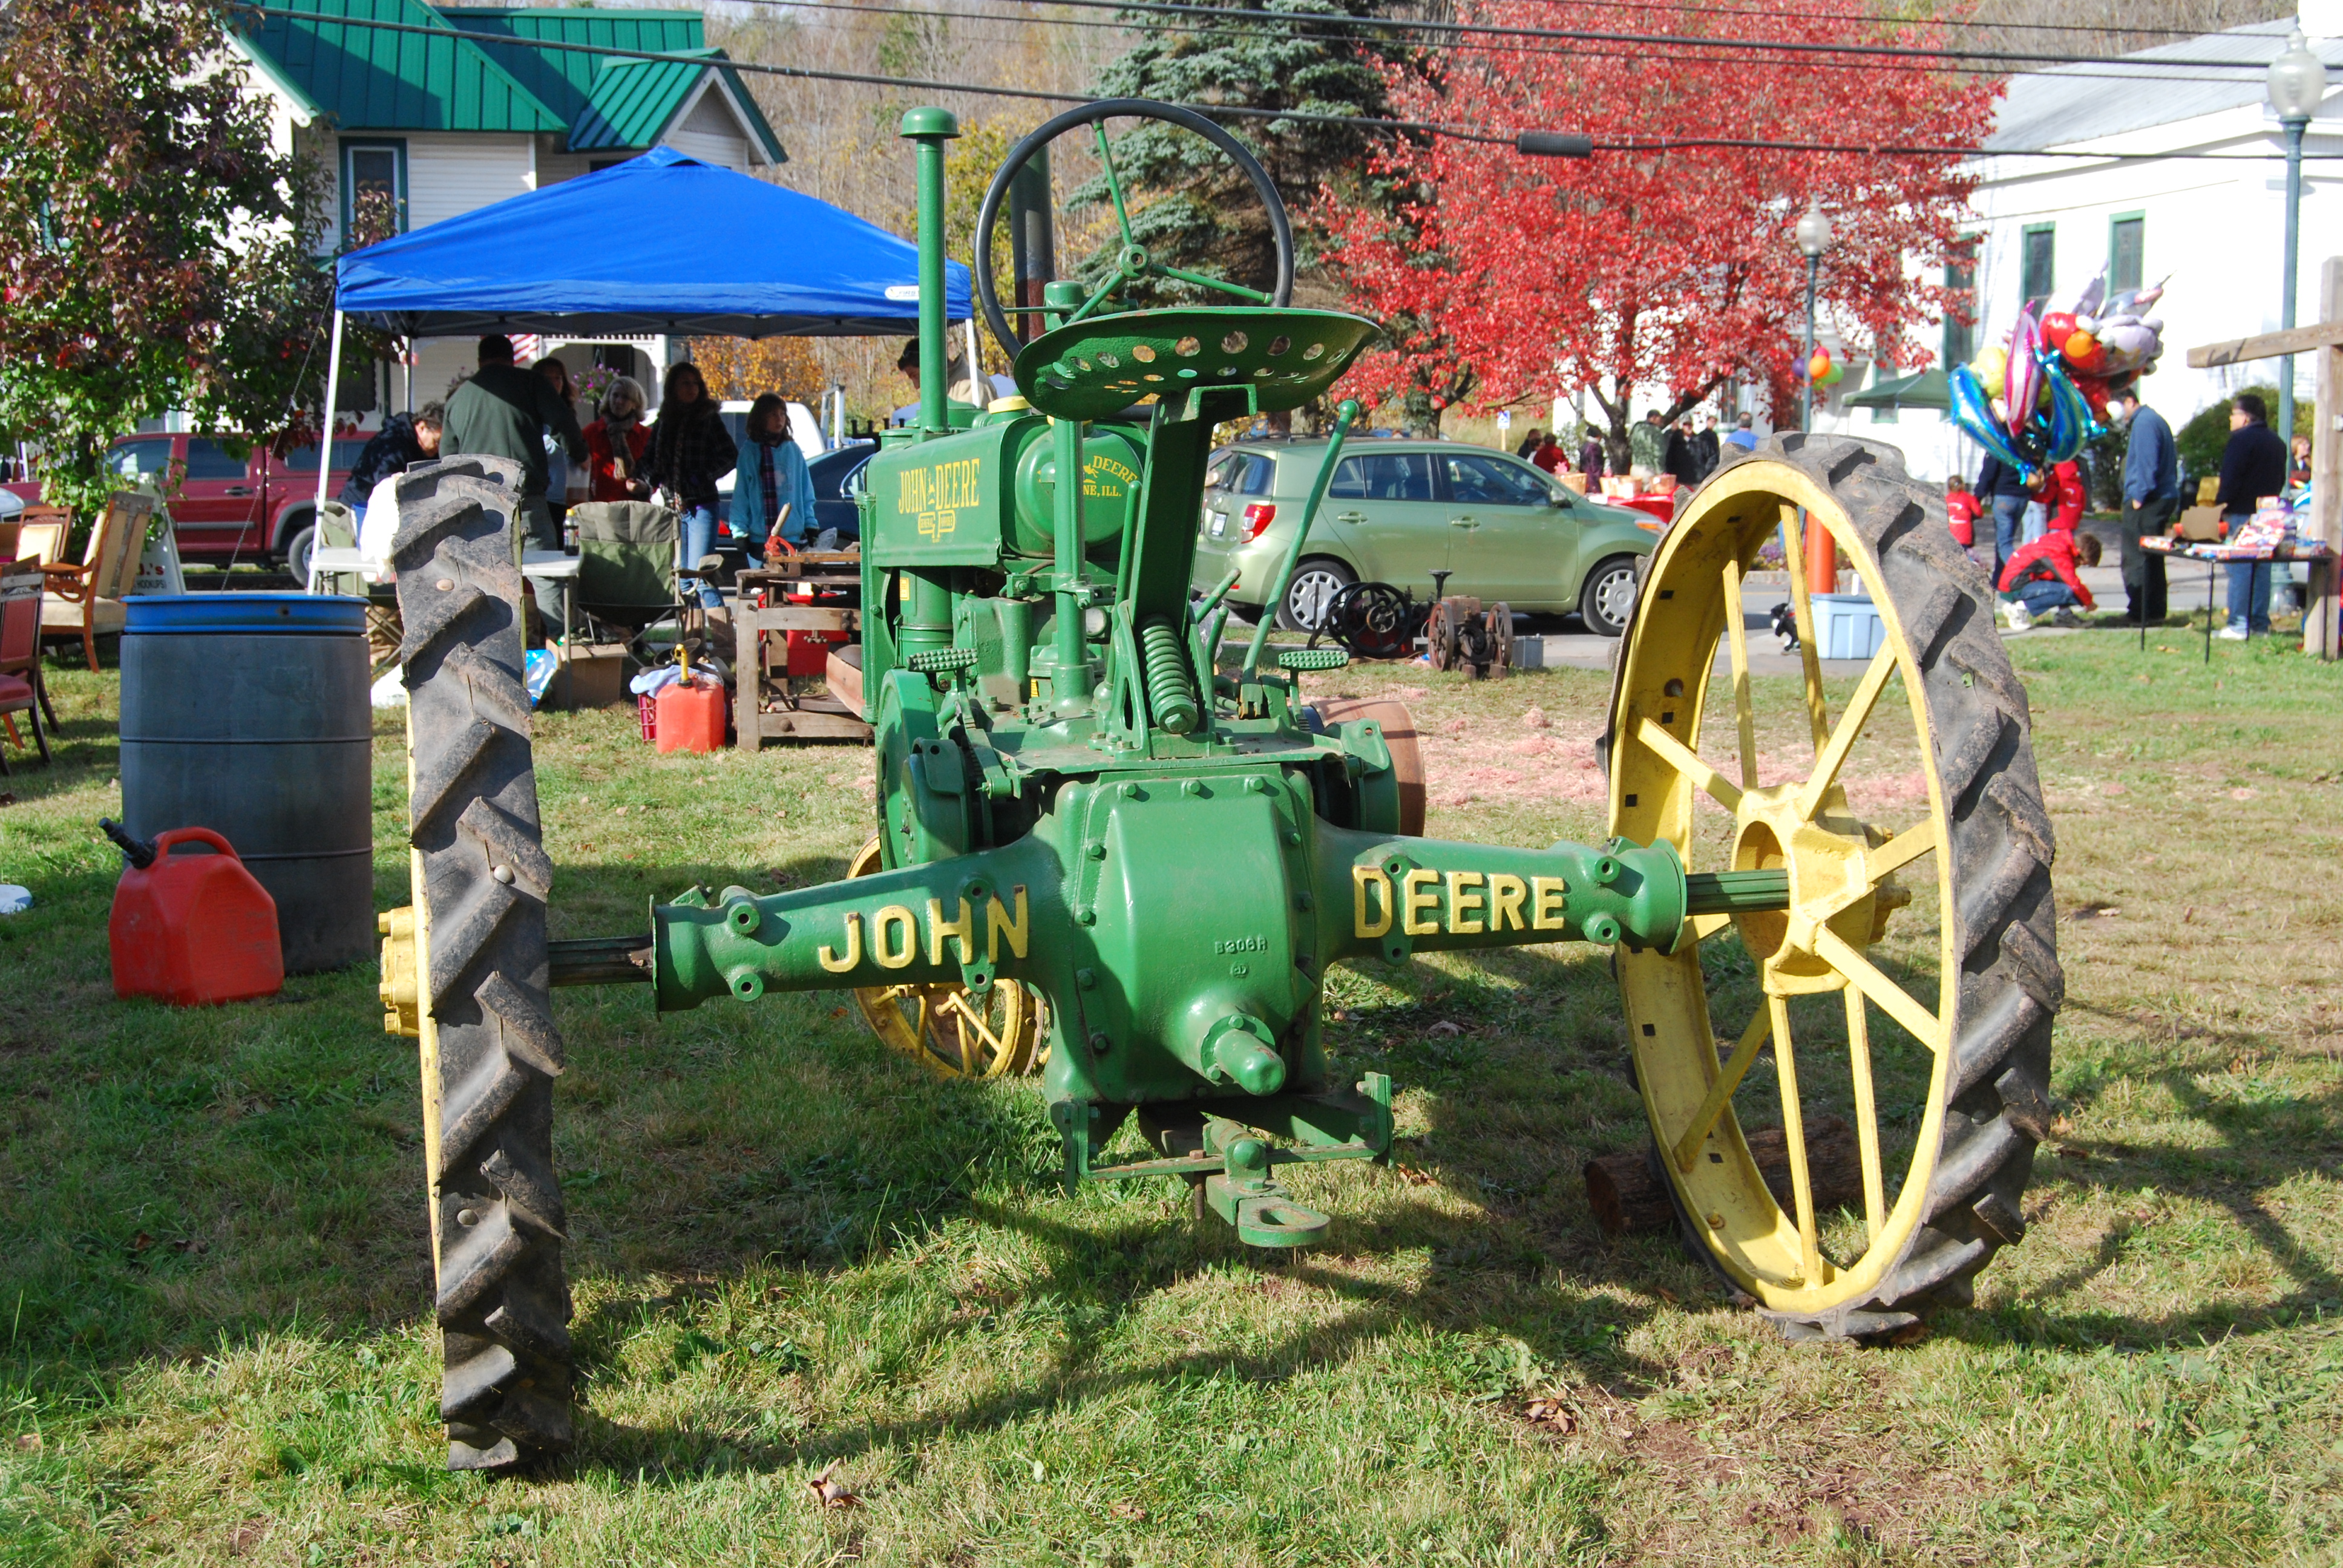 File:John Deere GP tractor, rear view.jpg - Wikimedia Commons